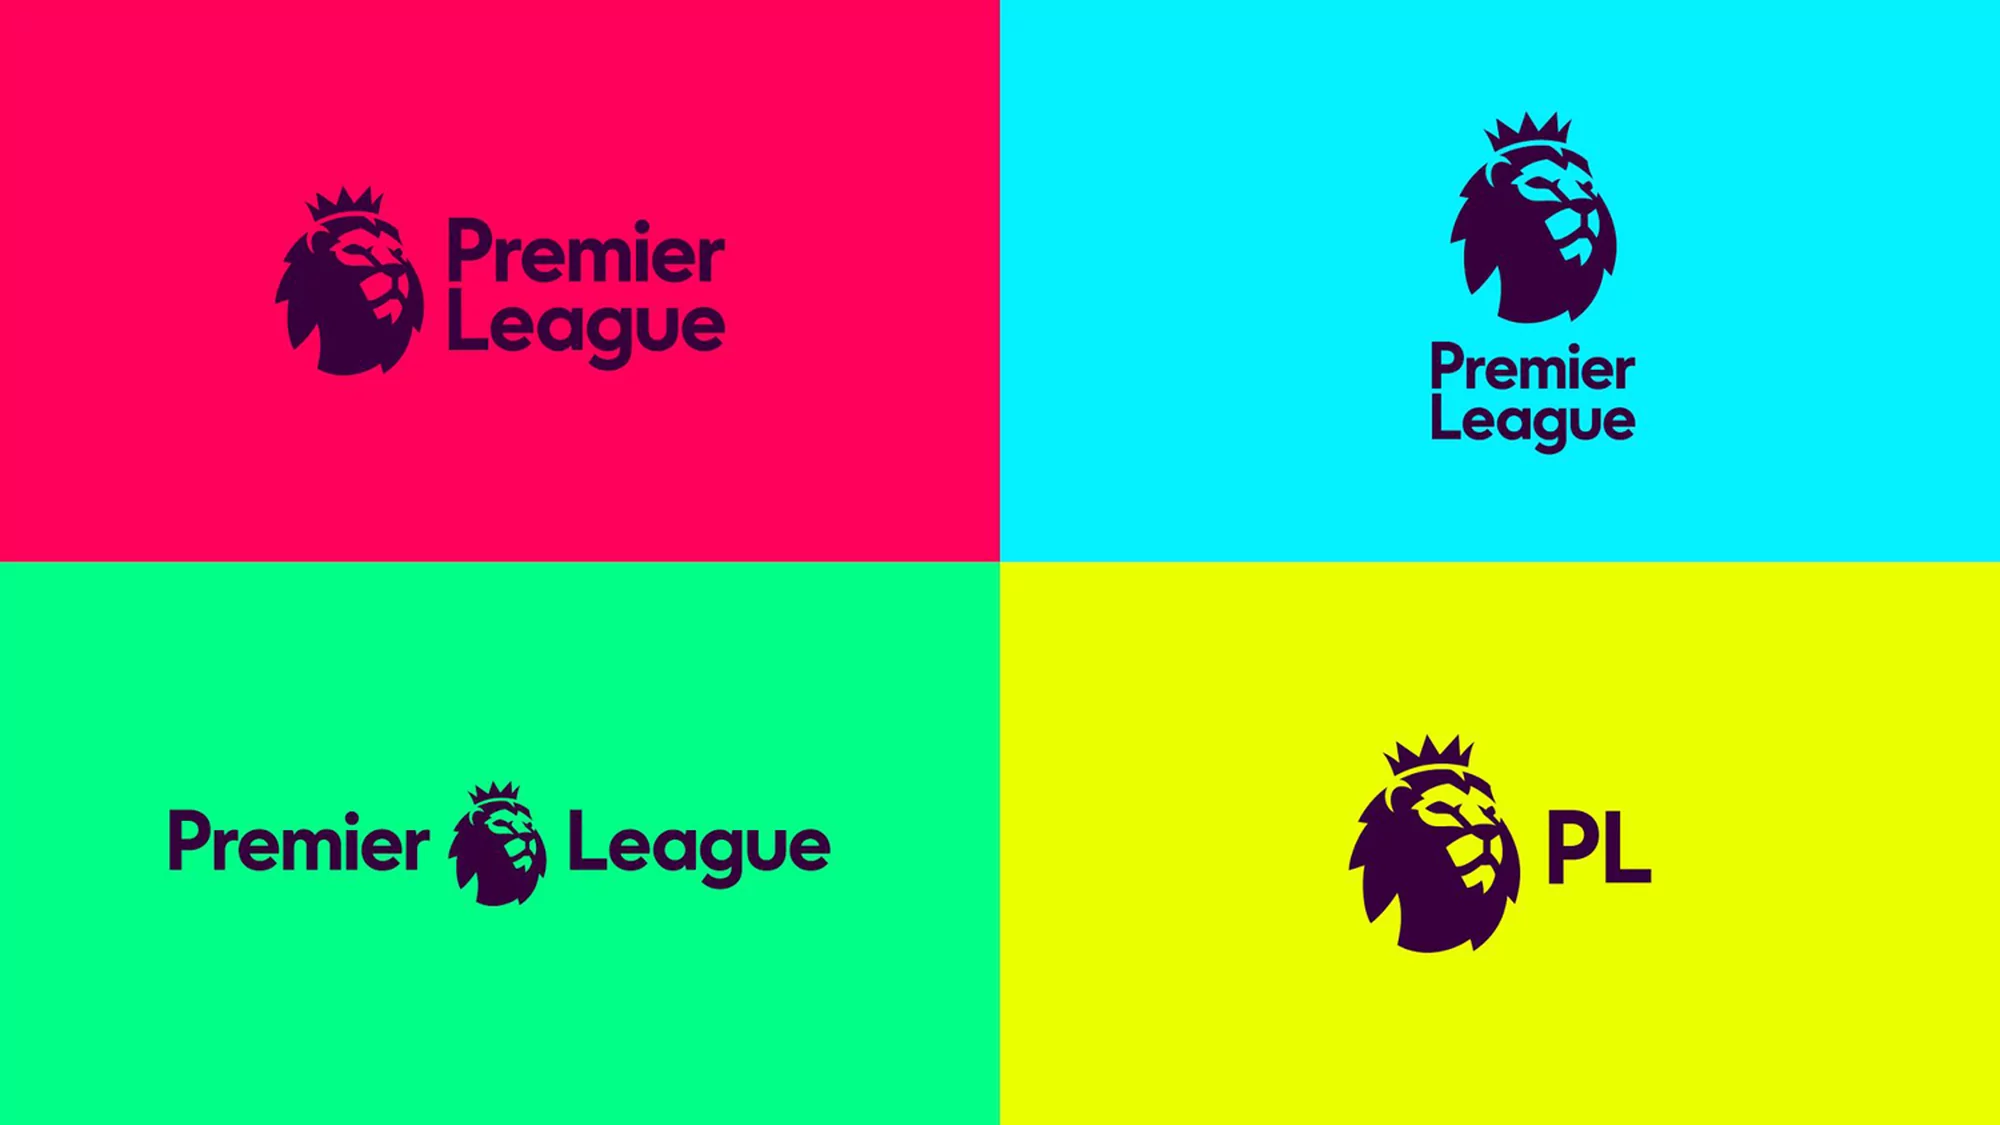 Premier League by DesignStudio